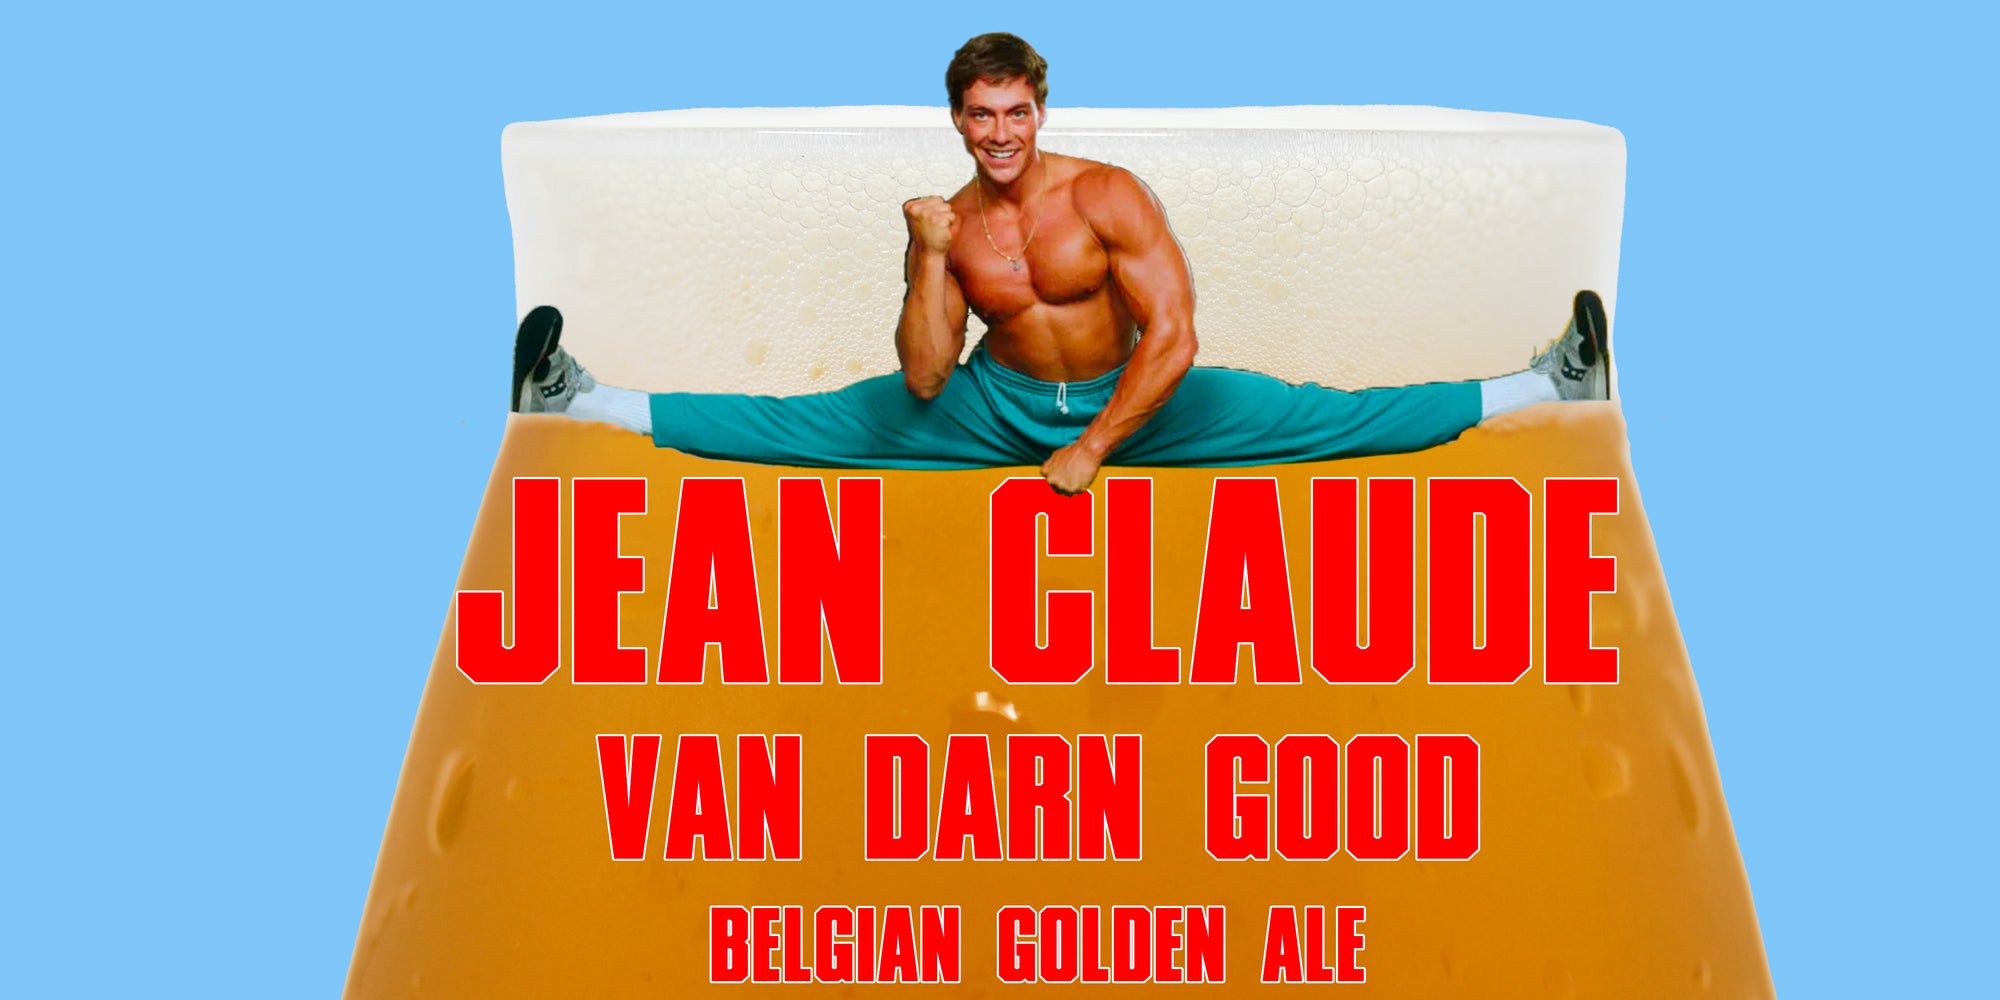 Jean Claude Van Darn Good Belgian Golden Ale